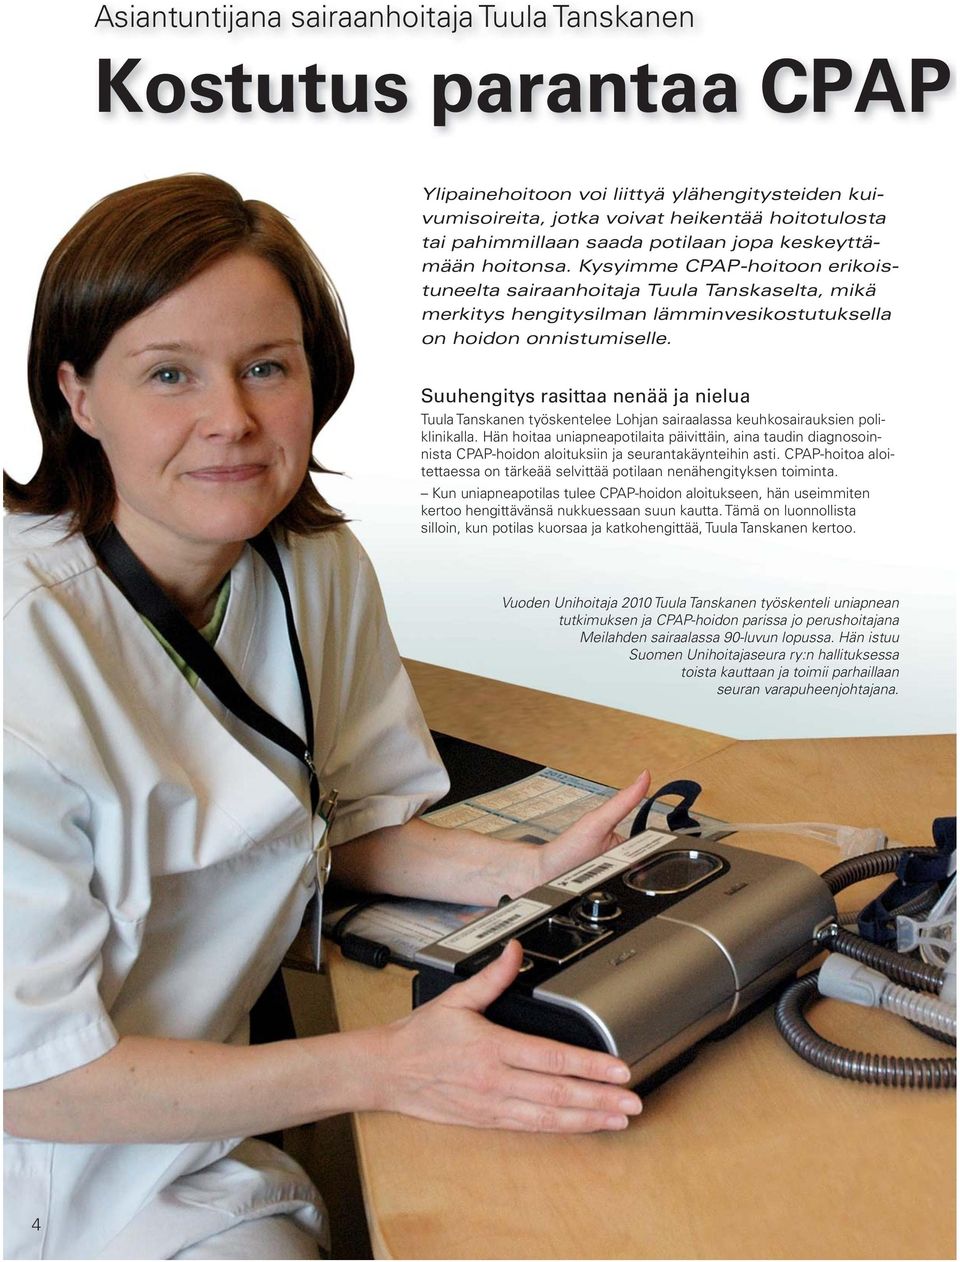 Suuhengitys rasittaa nenää ja nielua Tuula Tanskanen työskentelee Lohjan sairaalassa keuhkosairauksien poliklinikalla.